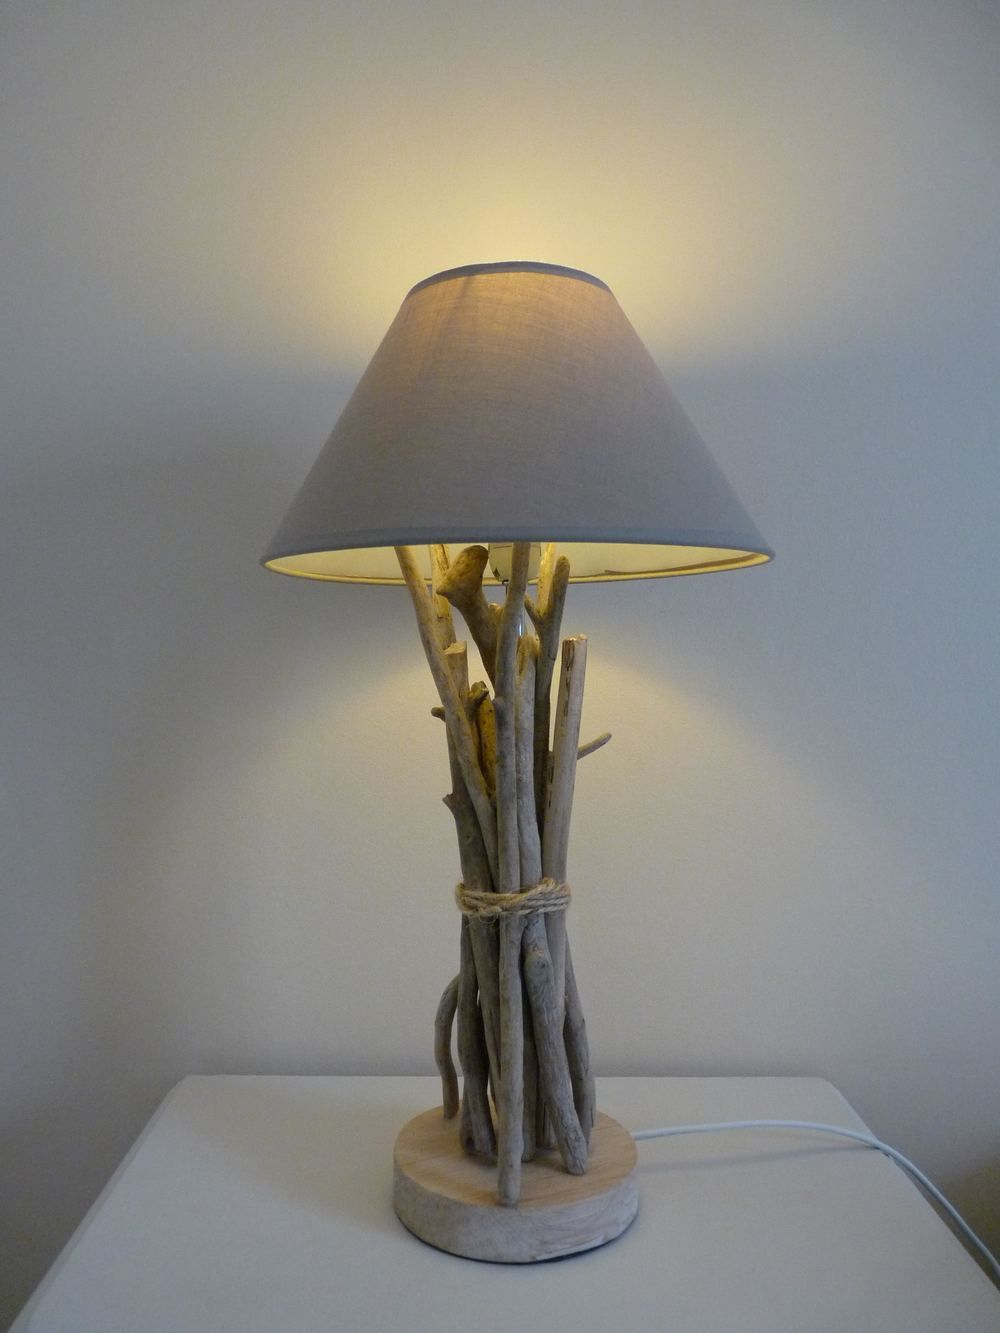 Lampe De Chevet En Bois Flotté - Driftwood Lamp  Lampe Bois, Lustre En pour Lampe Bois Flotté tutoriel